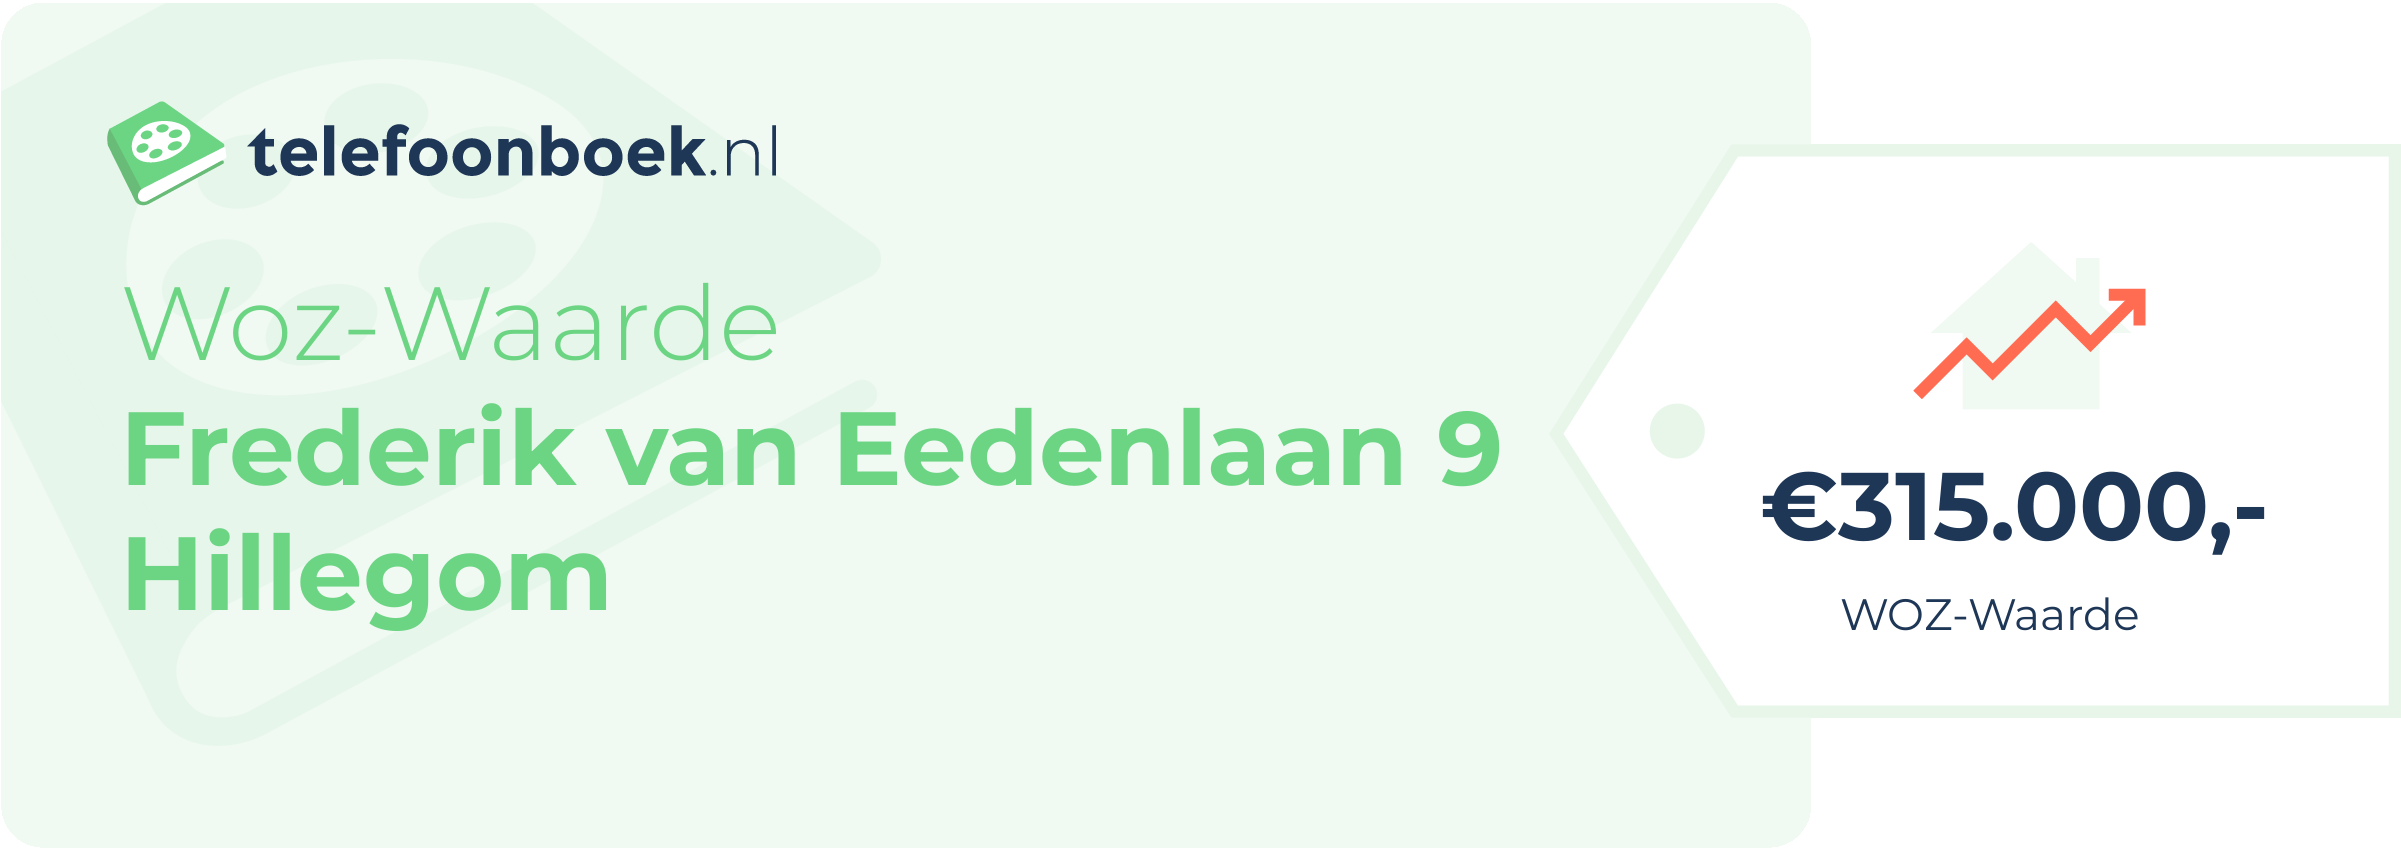 WOZ-waarde Frederik Van Eedenlaan 9 Hillegom